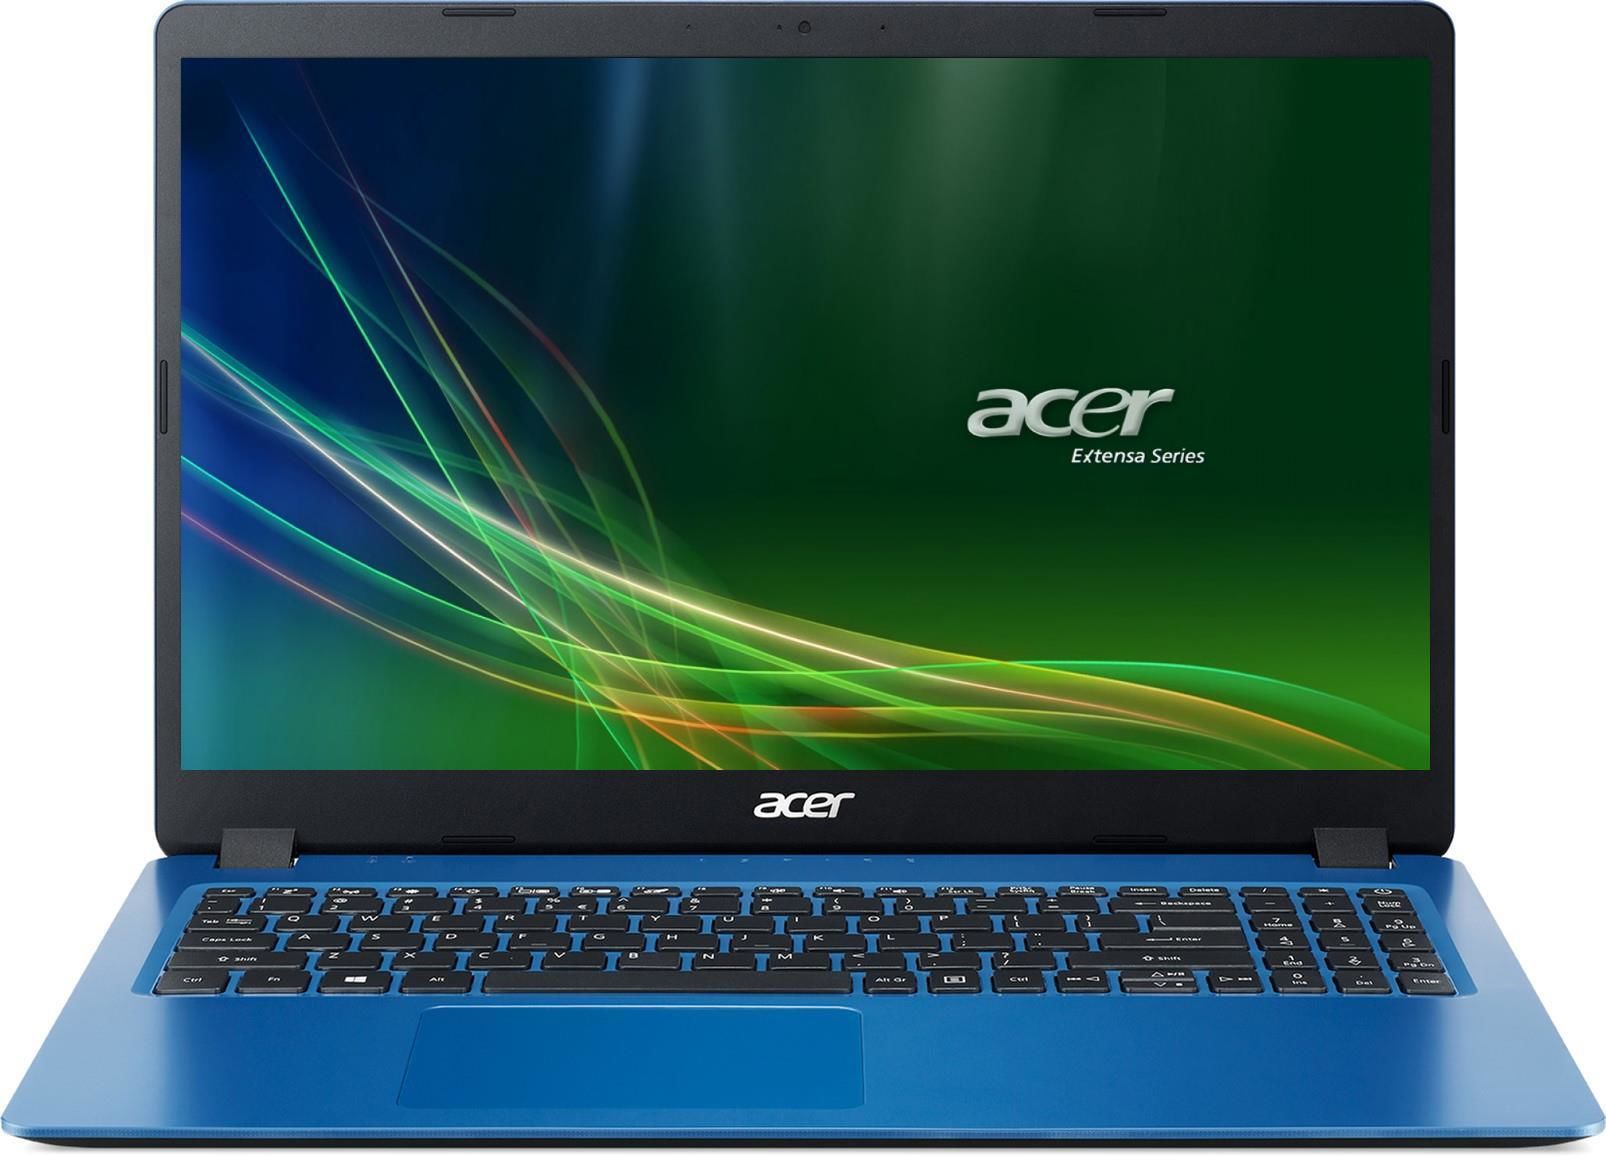 Ноутбук acer видит. Acer Aspire 8942g-434g50mi. Ноутбук Acer Aspire 9. Ноут Aspire 3 Acer голубой. Aspire a315 54.